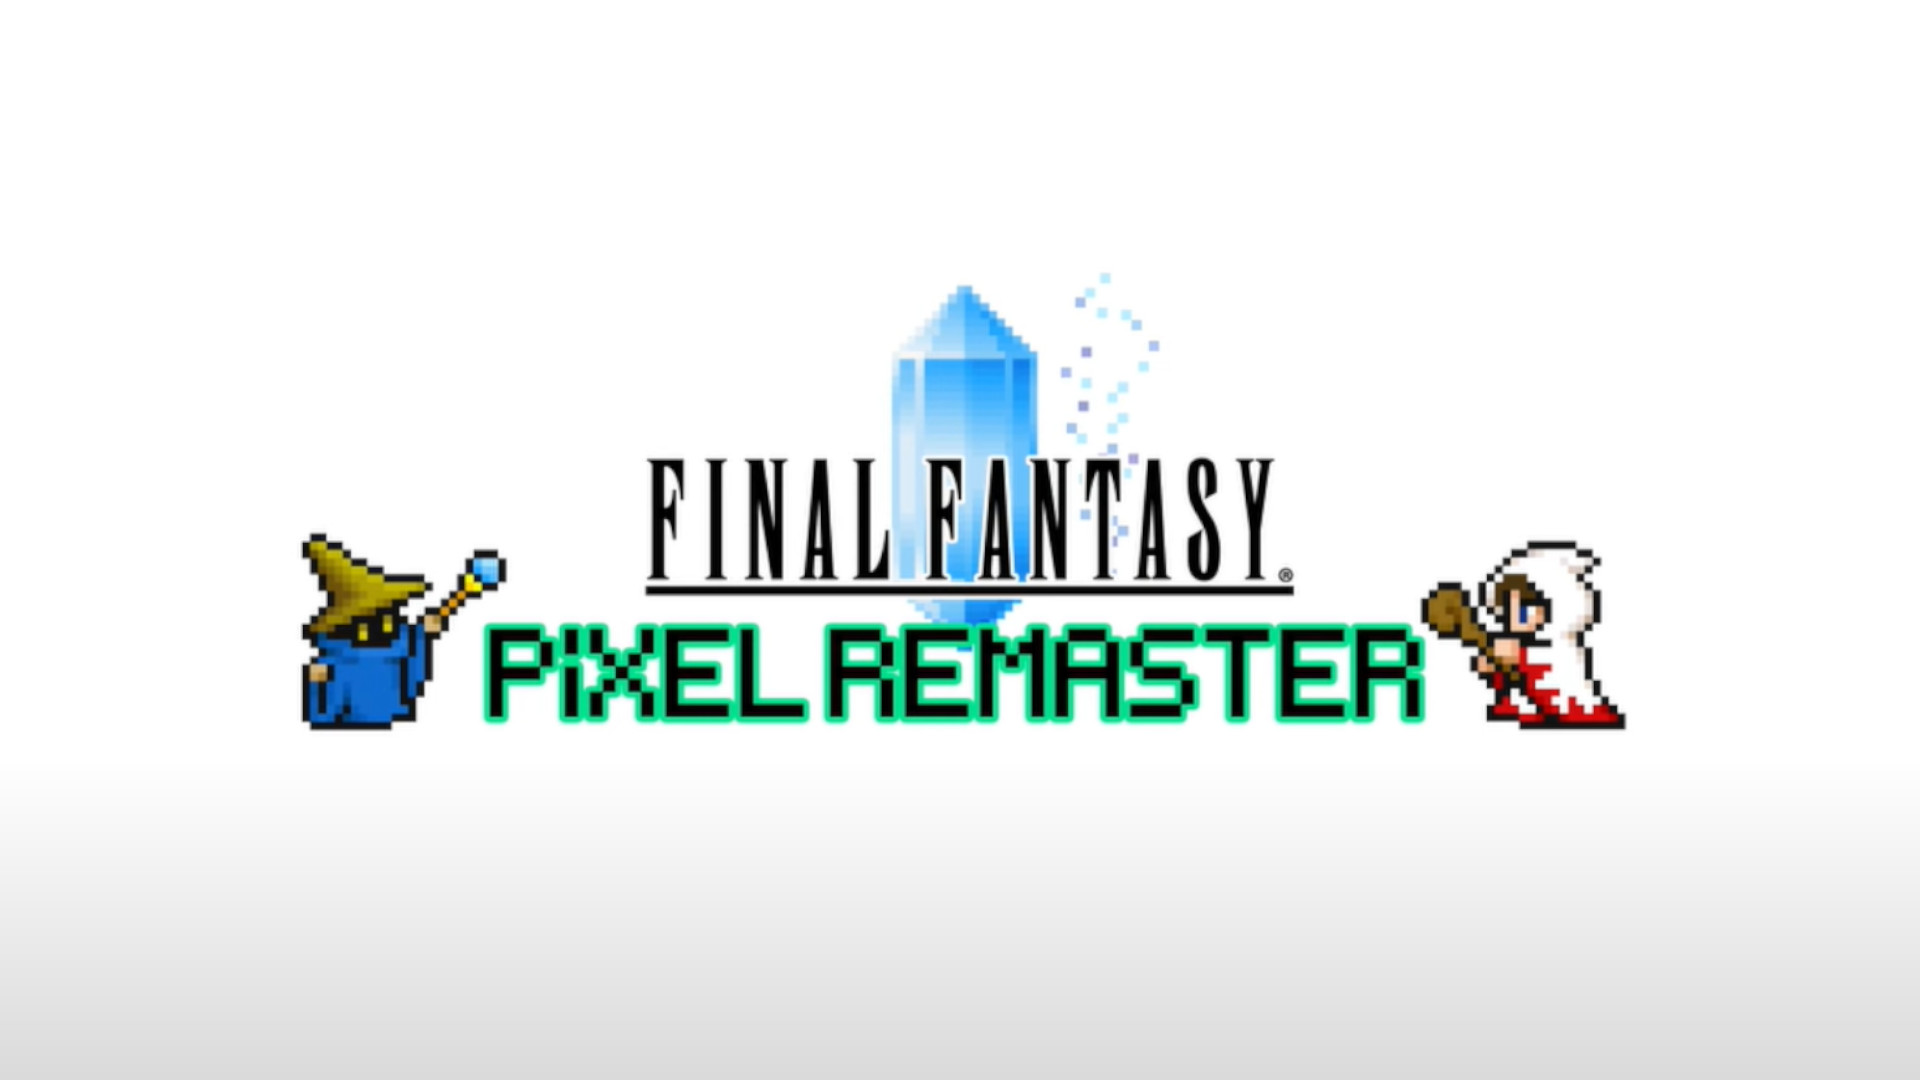 Final Fantasy Pixel Remaster wuxuu keenaa lixda kulan ee ugu horeeya Steam, si gaar ah